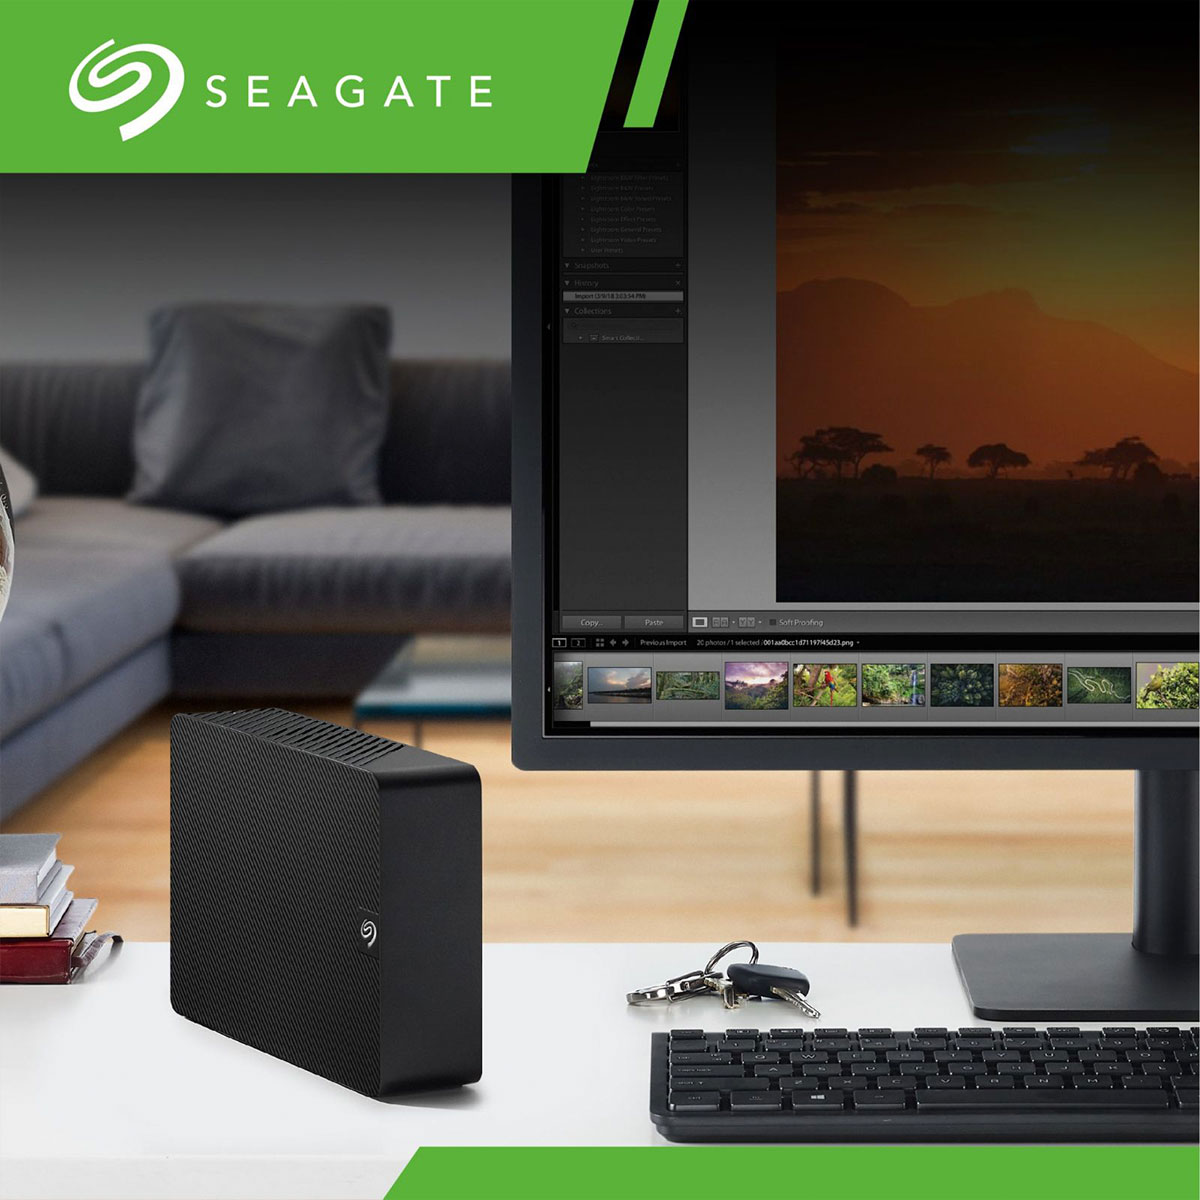 希捷 Seagate 世界硬碟製造商之一，主要產品包括桌面硬碟、企業用硬碟、筆記型電腦硬碟和微型硬碟。